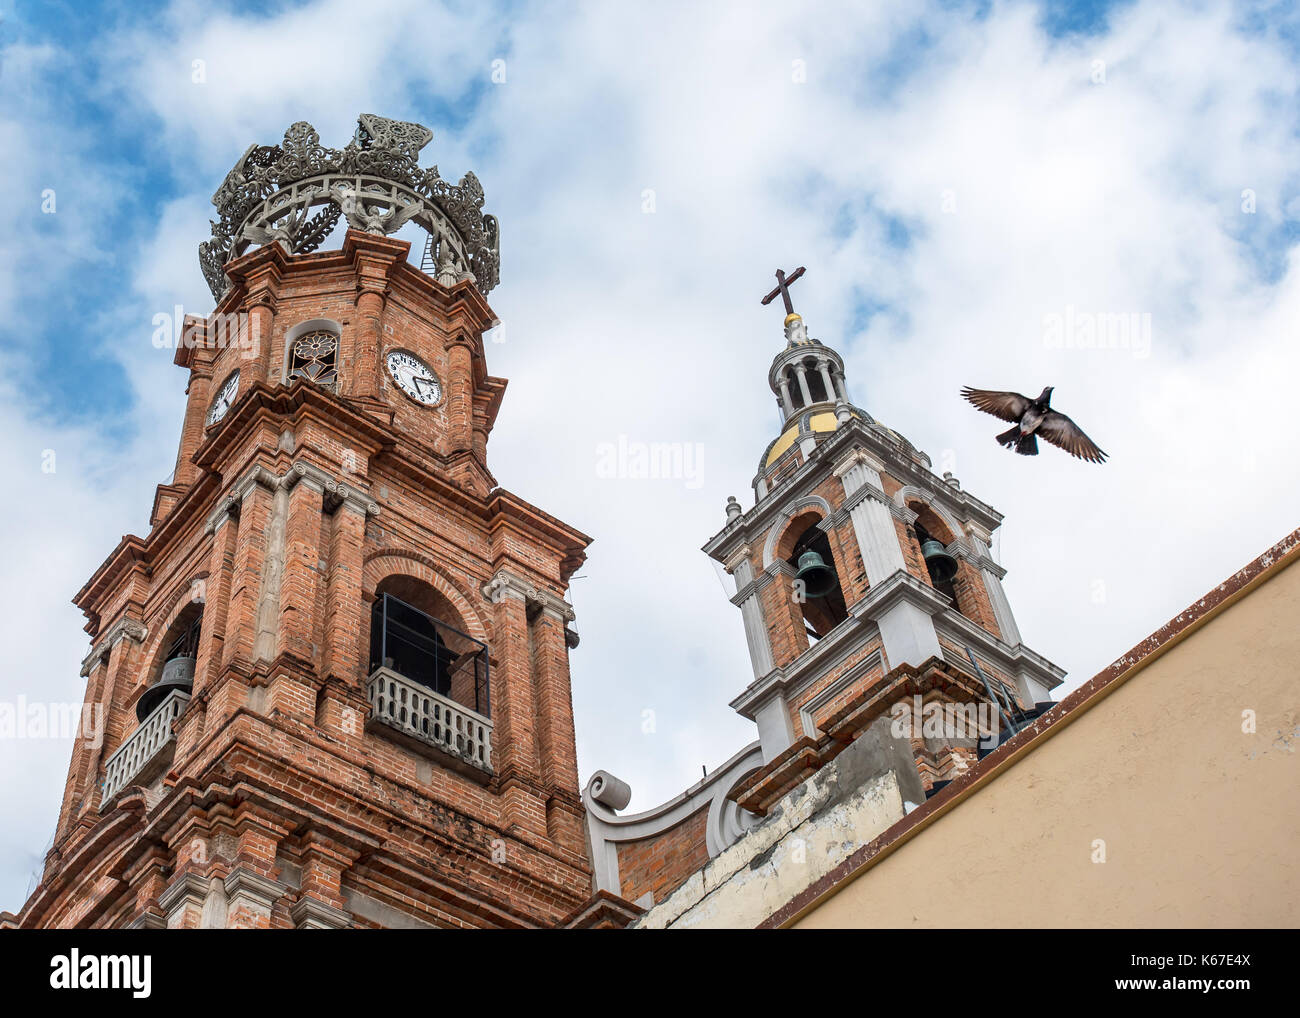 Les clochers de Notre Dame de Guadalupe cathédrale / Eglise dans la vieille ville de Puerto Vallarta comme un oiseau vole contre le ciel comme si symbolisant la paix ou d'espoir Banque D'Images